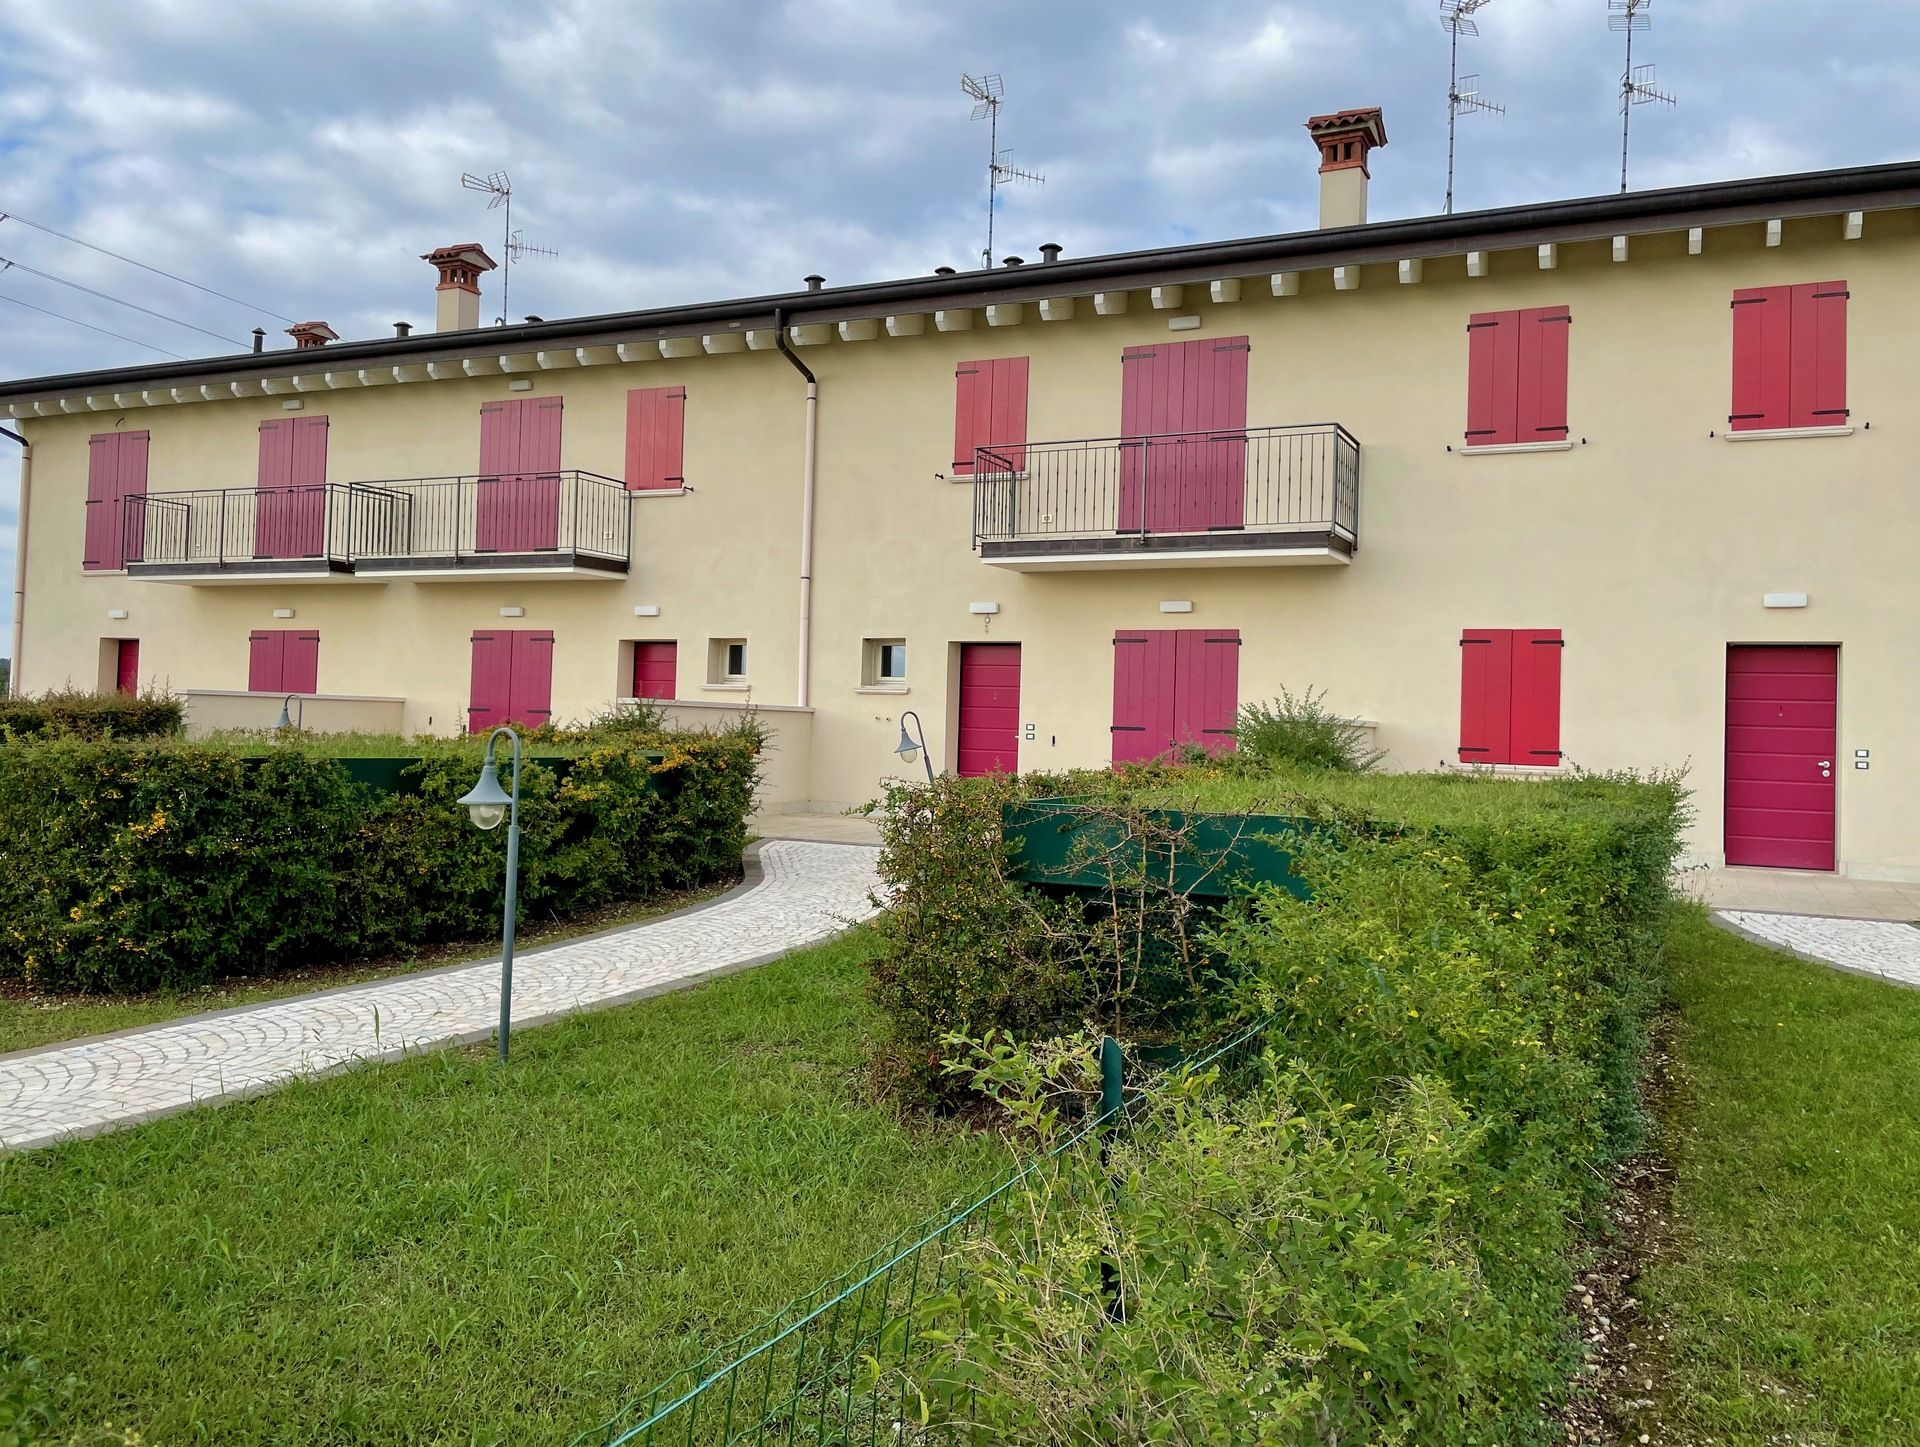 For sale villa by the lake Desenzano del Garda Lombardia